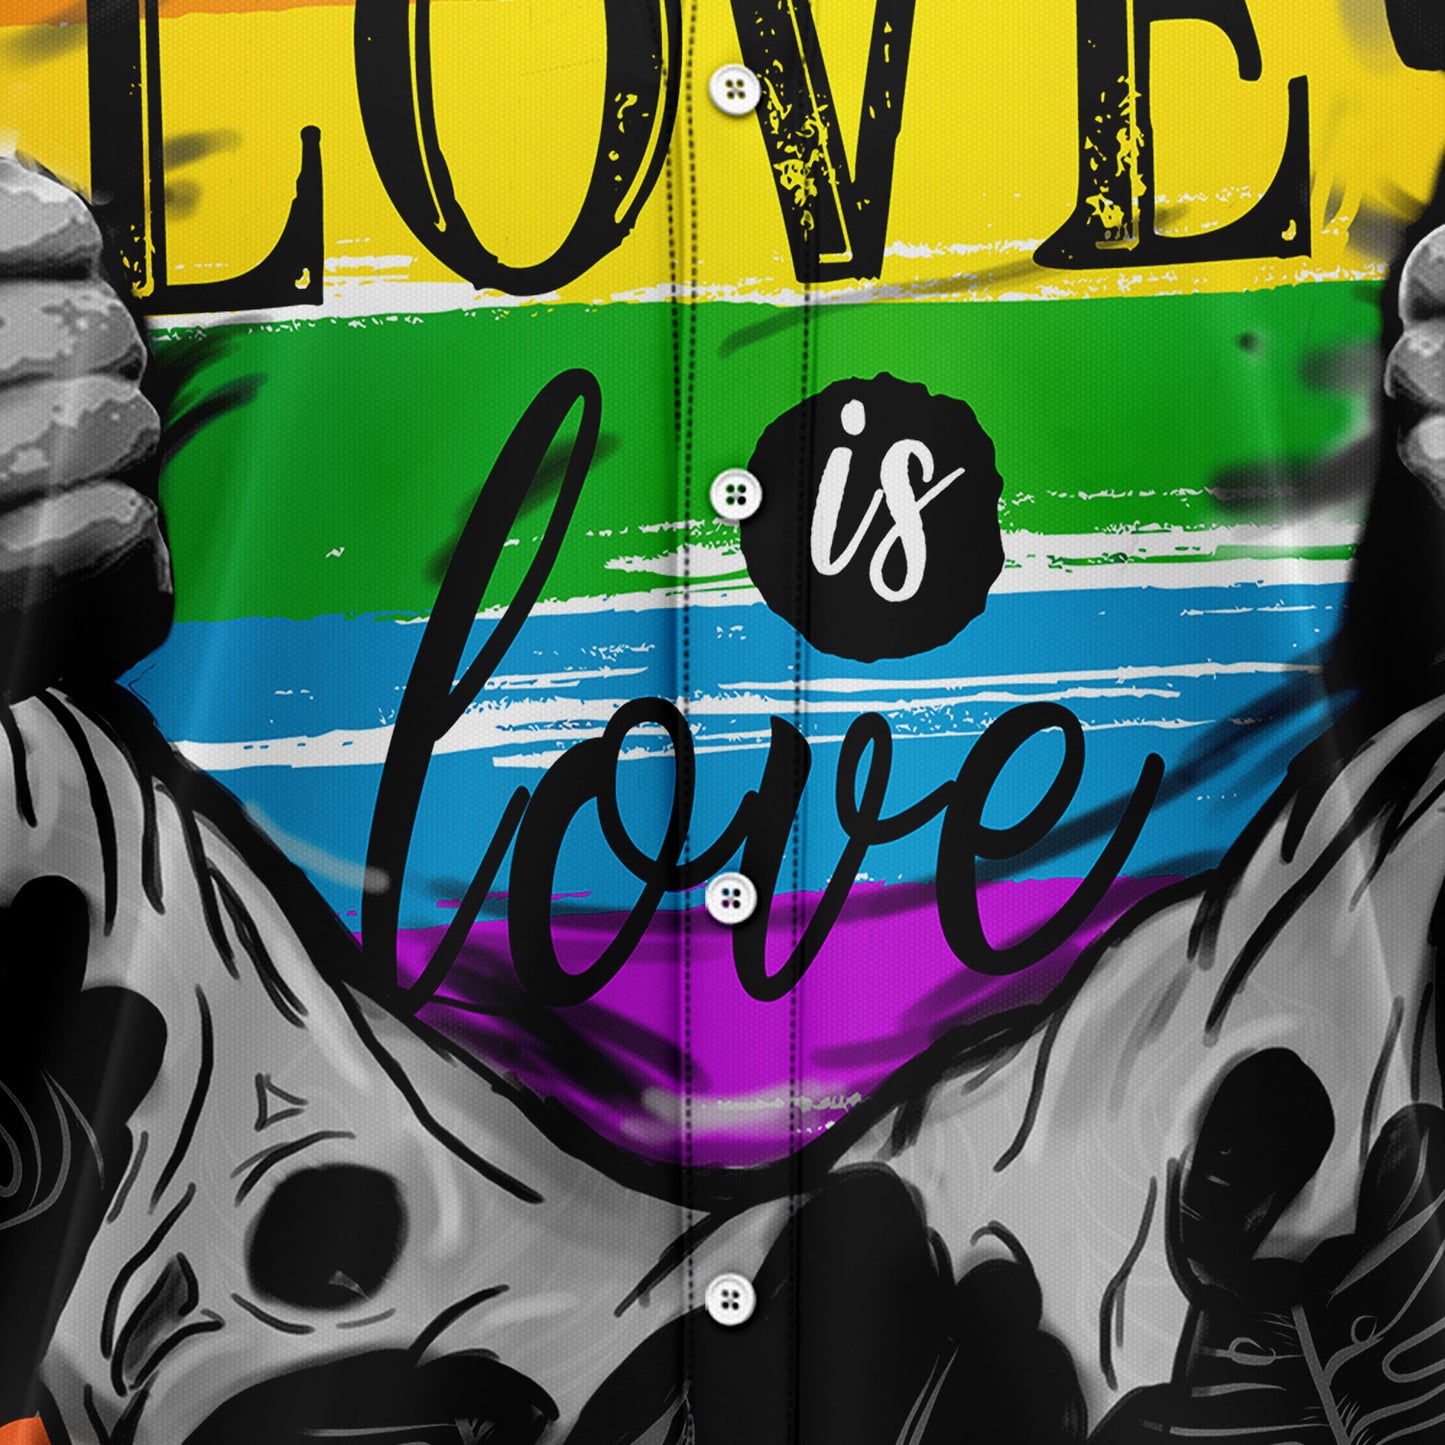 LGBT Love Pride TY2707 Hawaiian Shirt